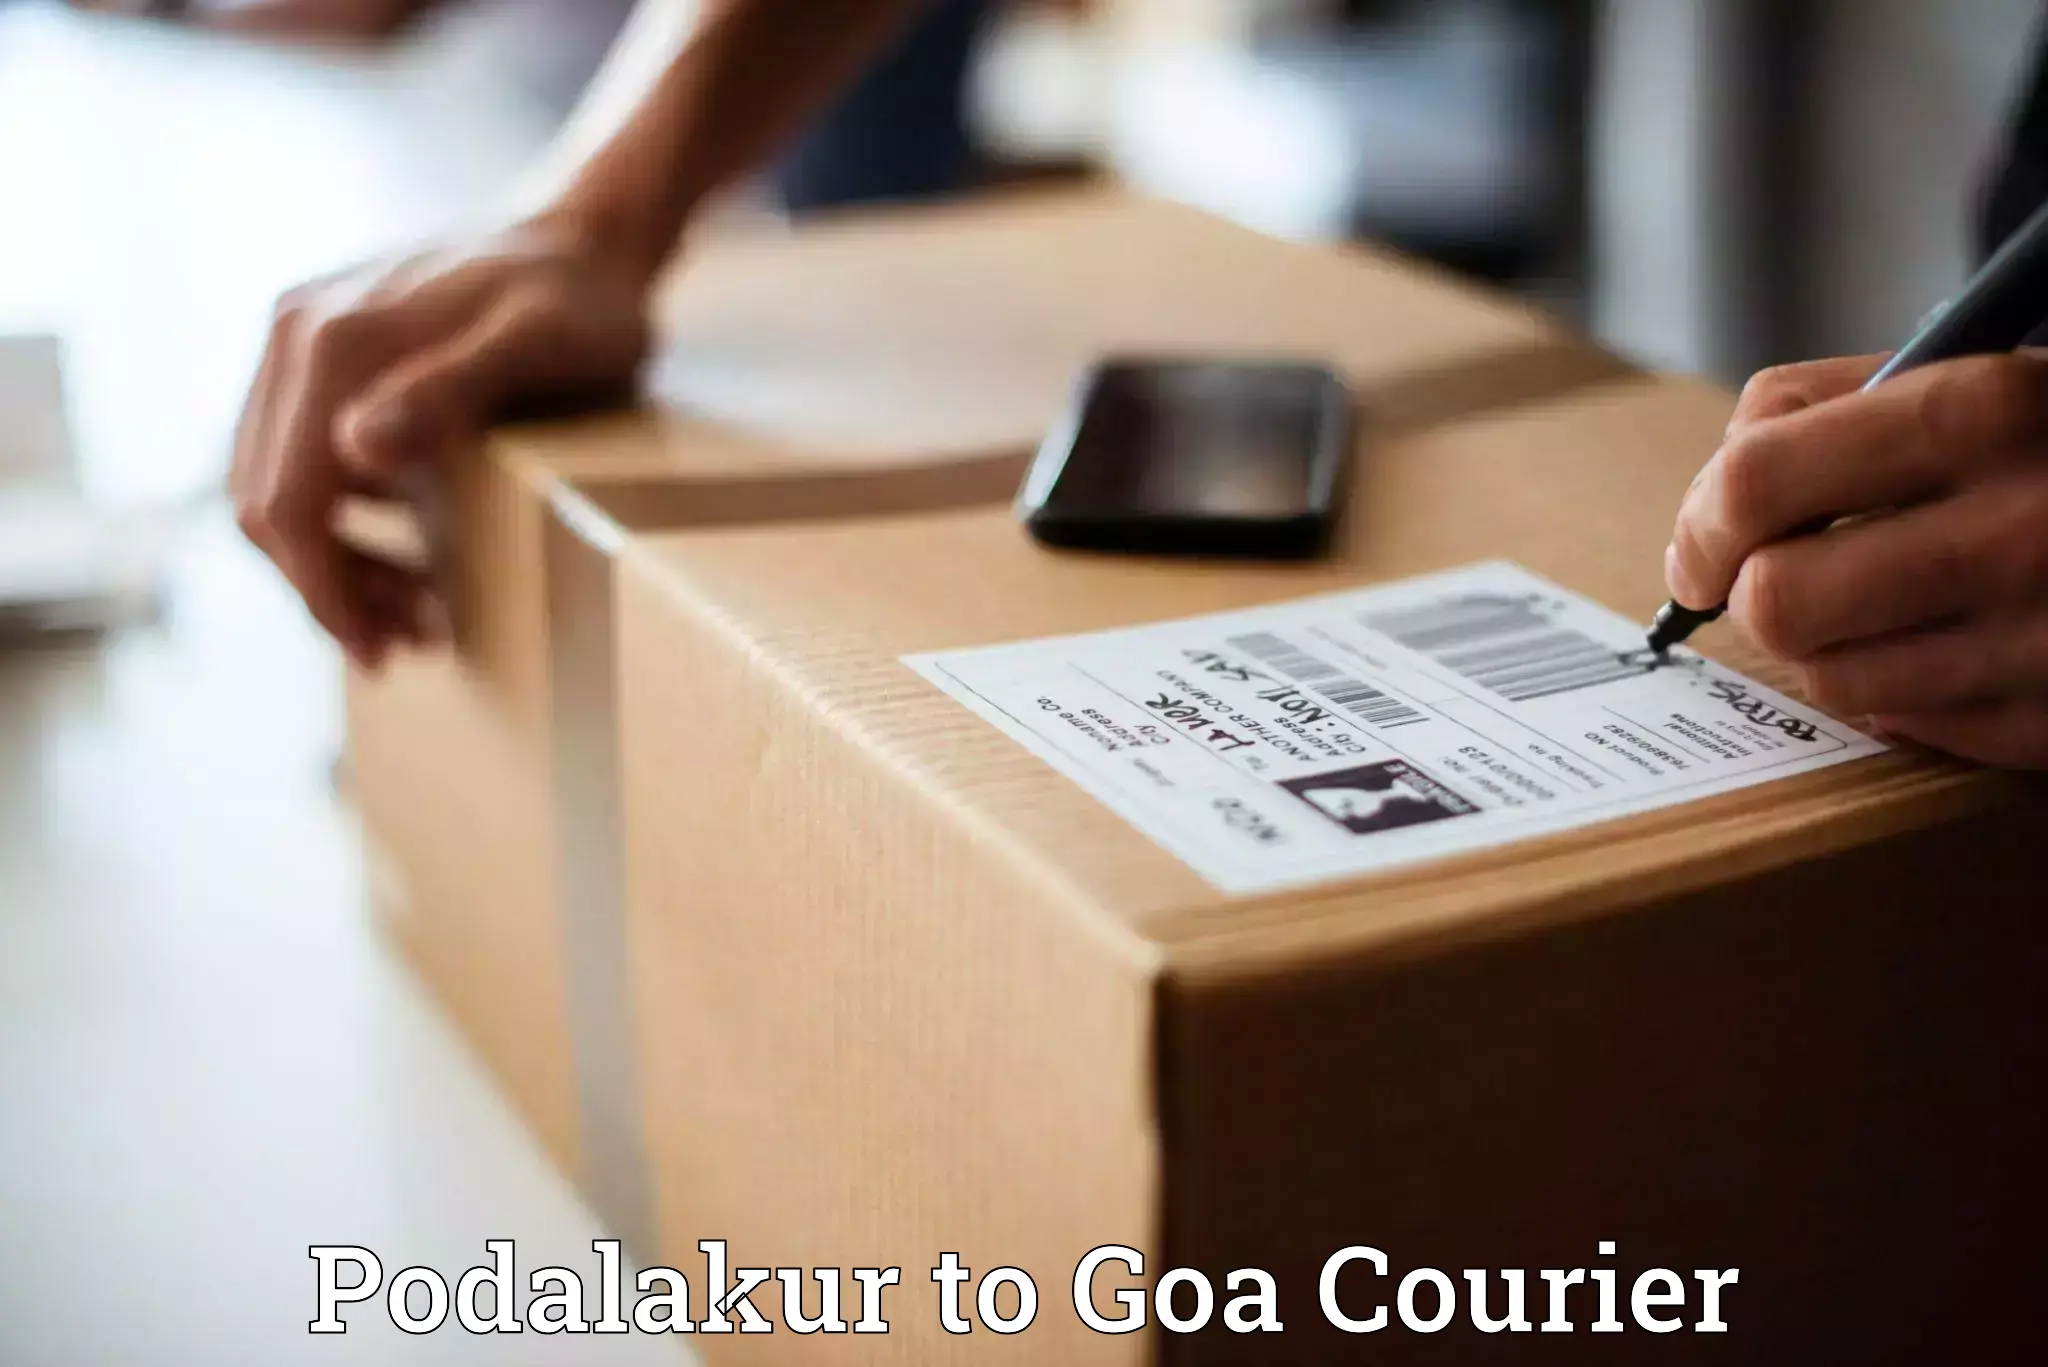 Next-day freight services Podalakur to NIT Goa